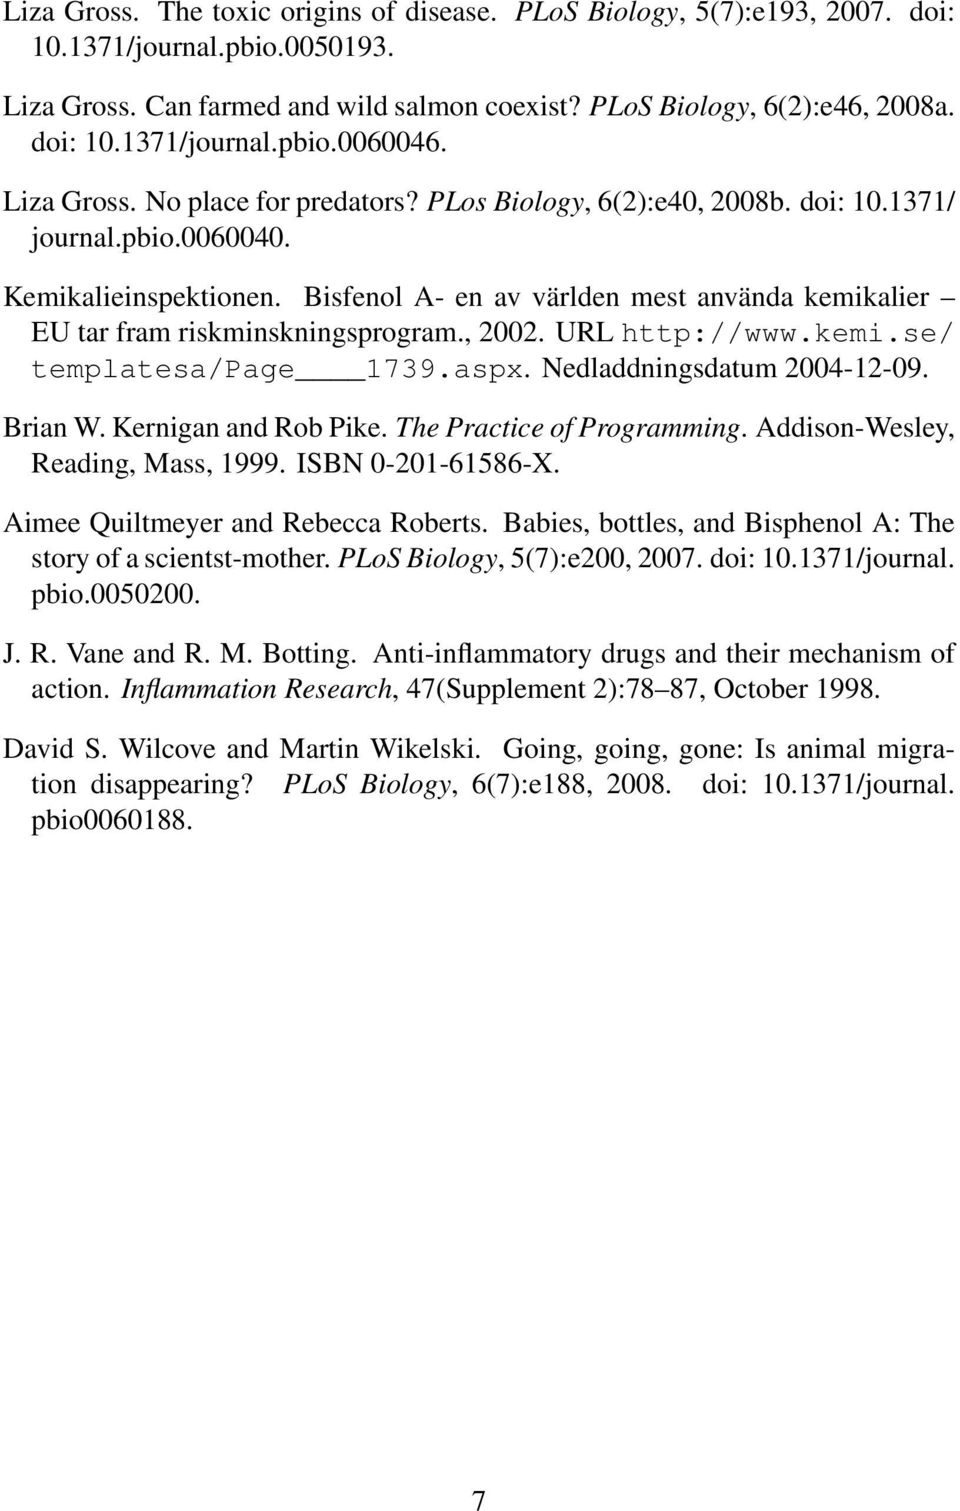 Bisfenol A- en av världen mest använda kemikalier EU tar fram riskminskningsprogram., 2002. URL http://www.kemi.se/ templatesa/page 1739.aspx. Nedladdningsdatum 2004-12-09. Brian W.